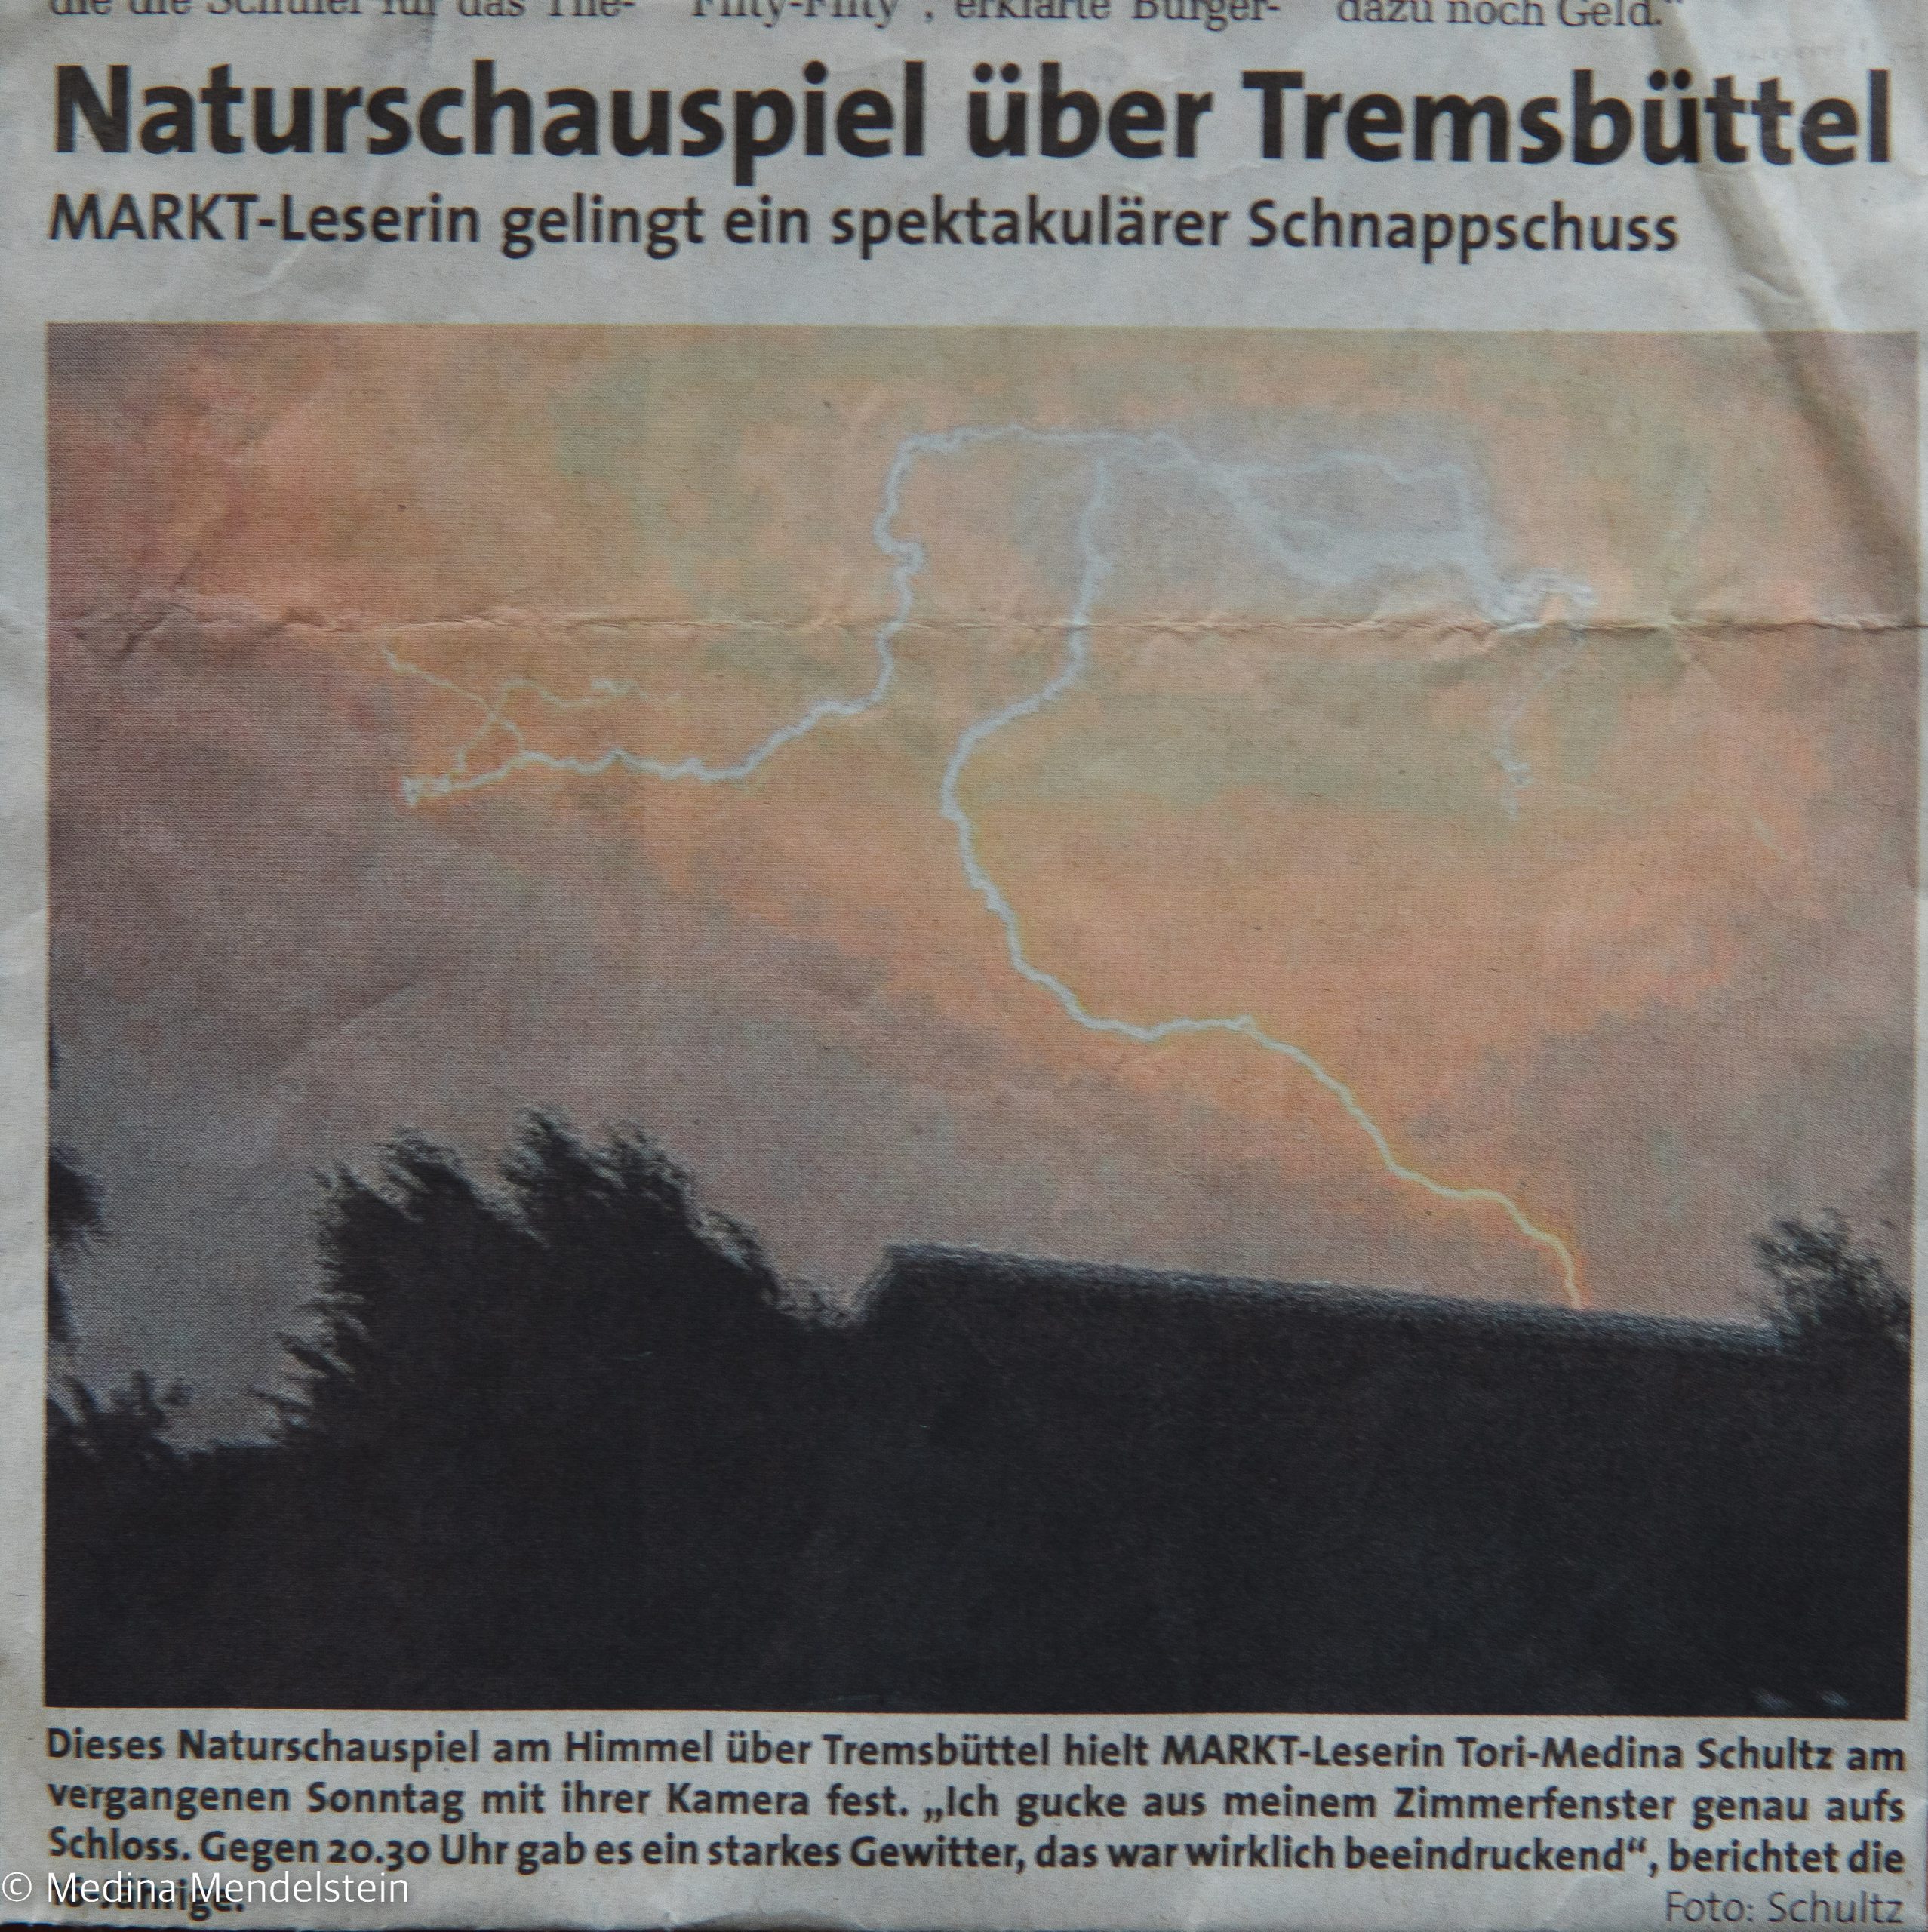 Fotografie von einem Blitz bei Gewitter. Mit diesem Bild bin ich in die Lokalzeitung gekommen.